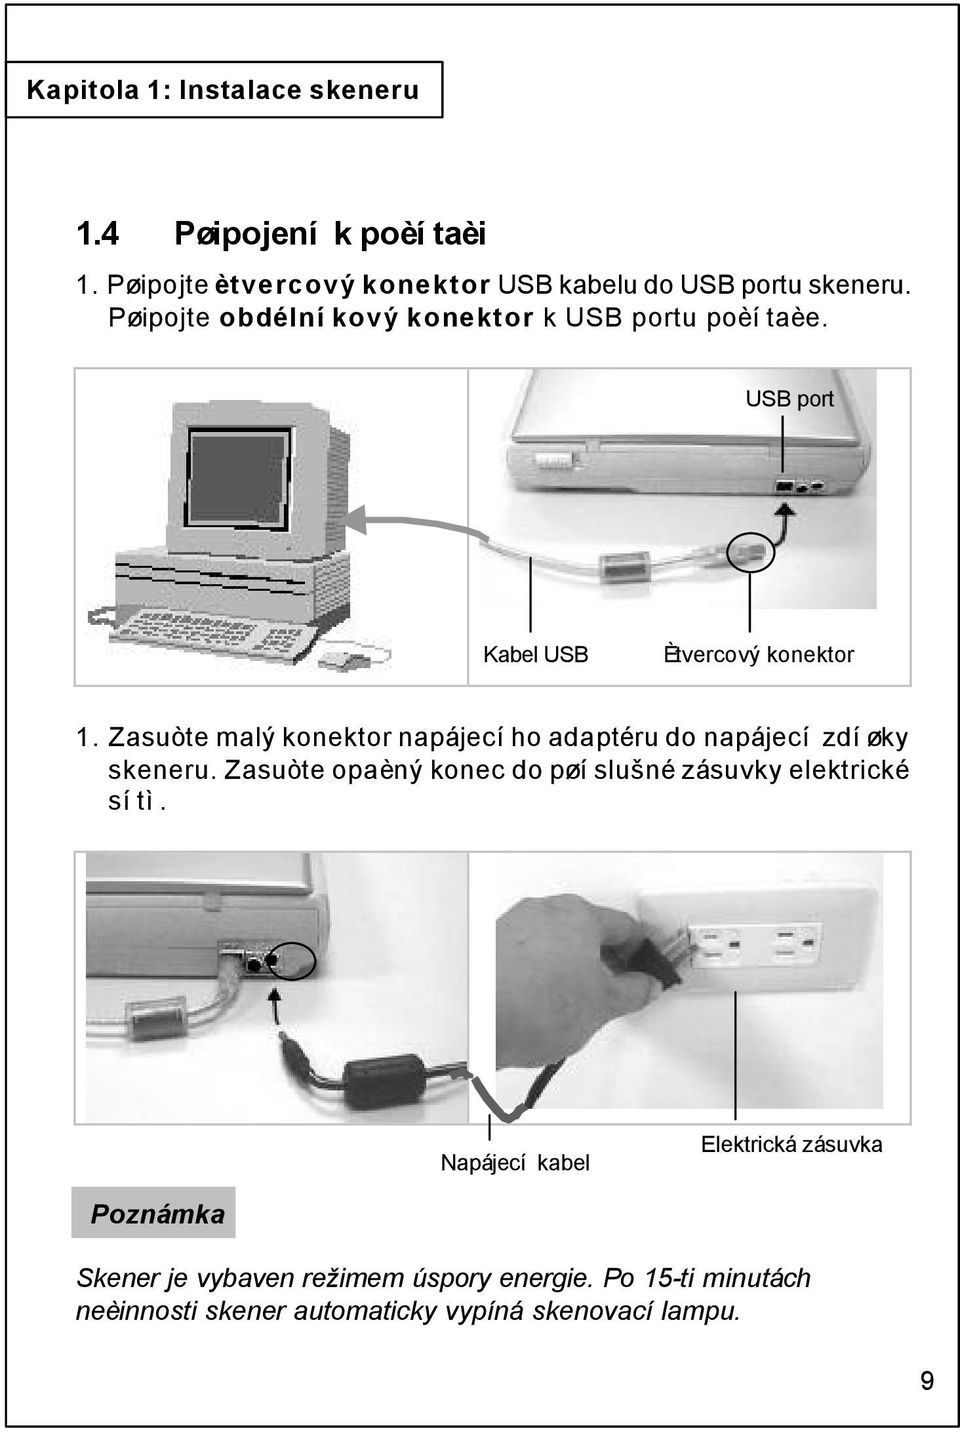 Zasuòte malý konektor napájecího adaptéru do napájecí zdíøky skeneru.